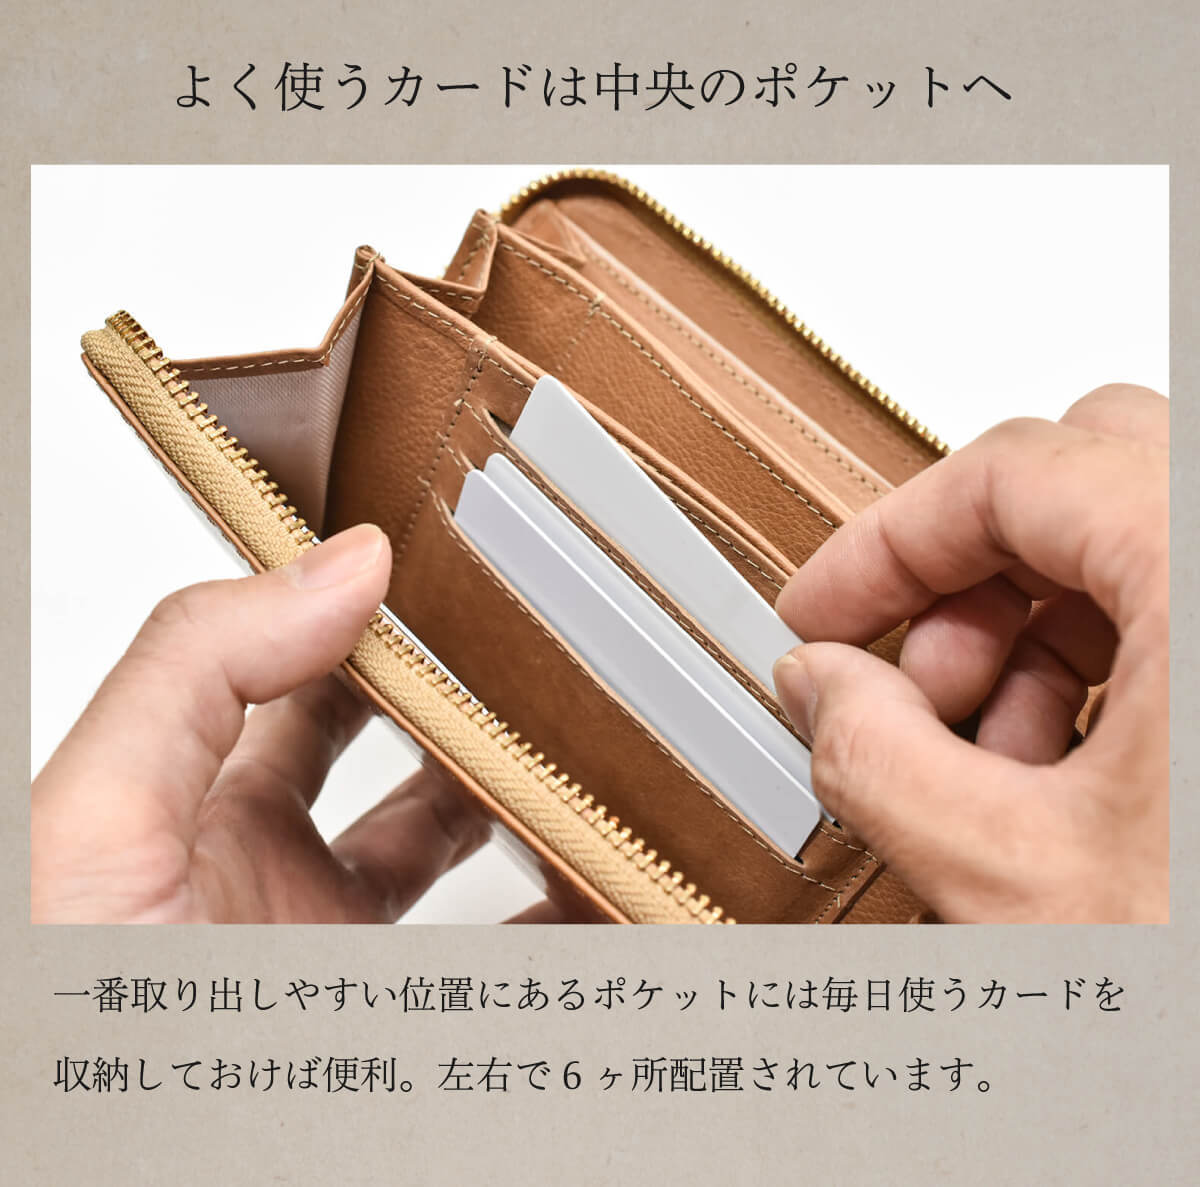 メンズ財布 長財布 ラウンドファスナー 高級 本革 人気 日本製 国産 キップレザー ワックス 財布 ブランド JAPAN FACTORY